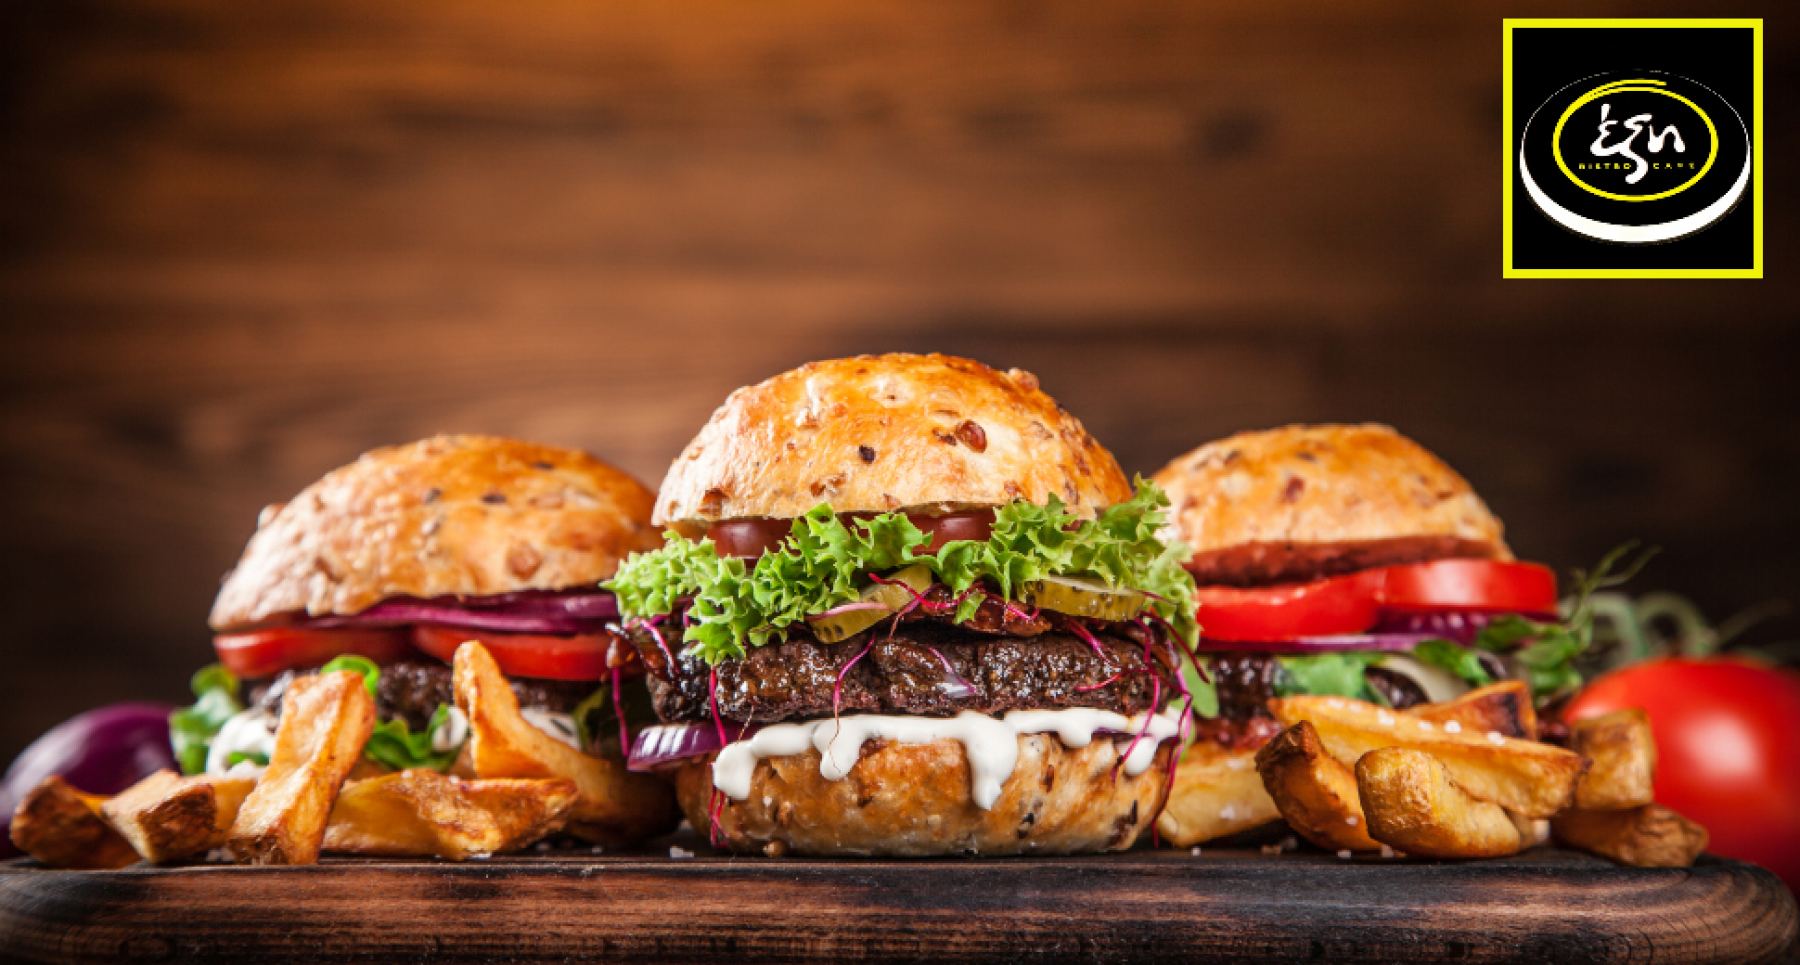 Λαμία: Μη χάσετε τη λαχταριστή burger night στο «Έξη Bistro Café»!